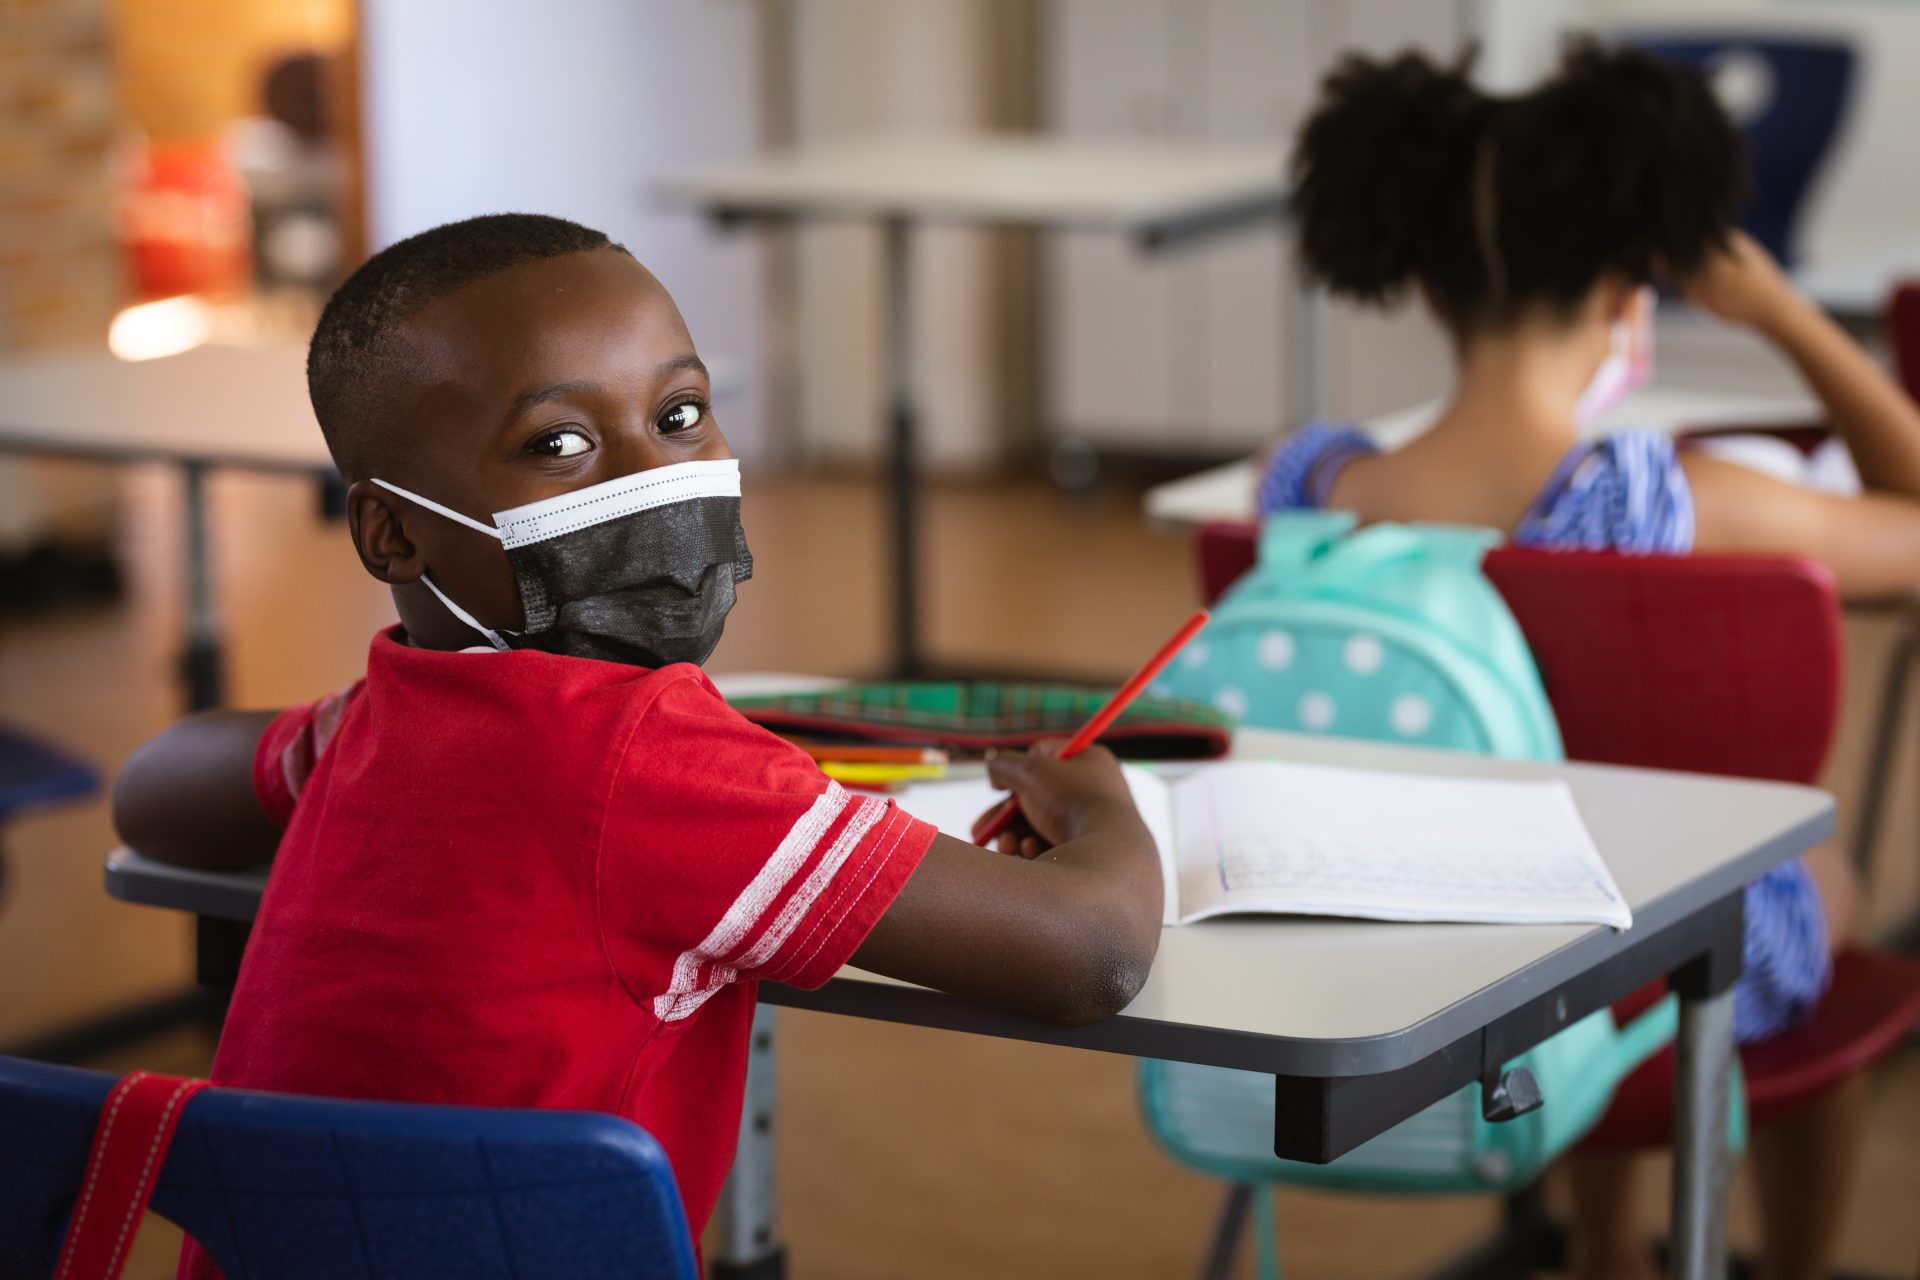 Imagem de uma criança negra em uma sala de aula, usando máscara e segurando um lápis